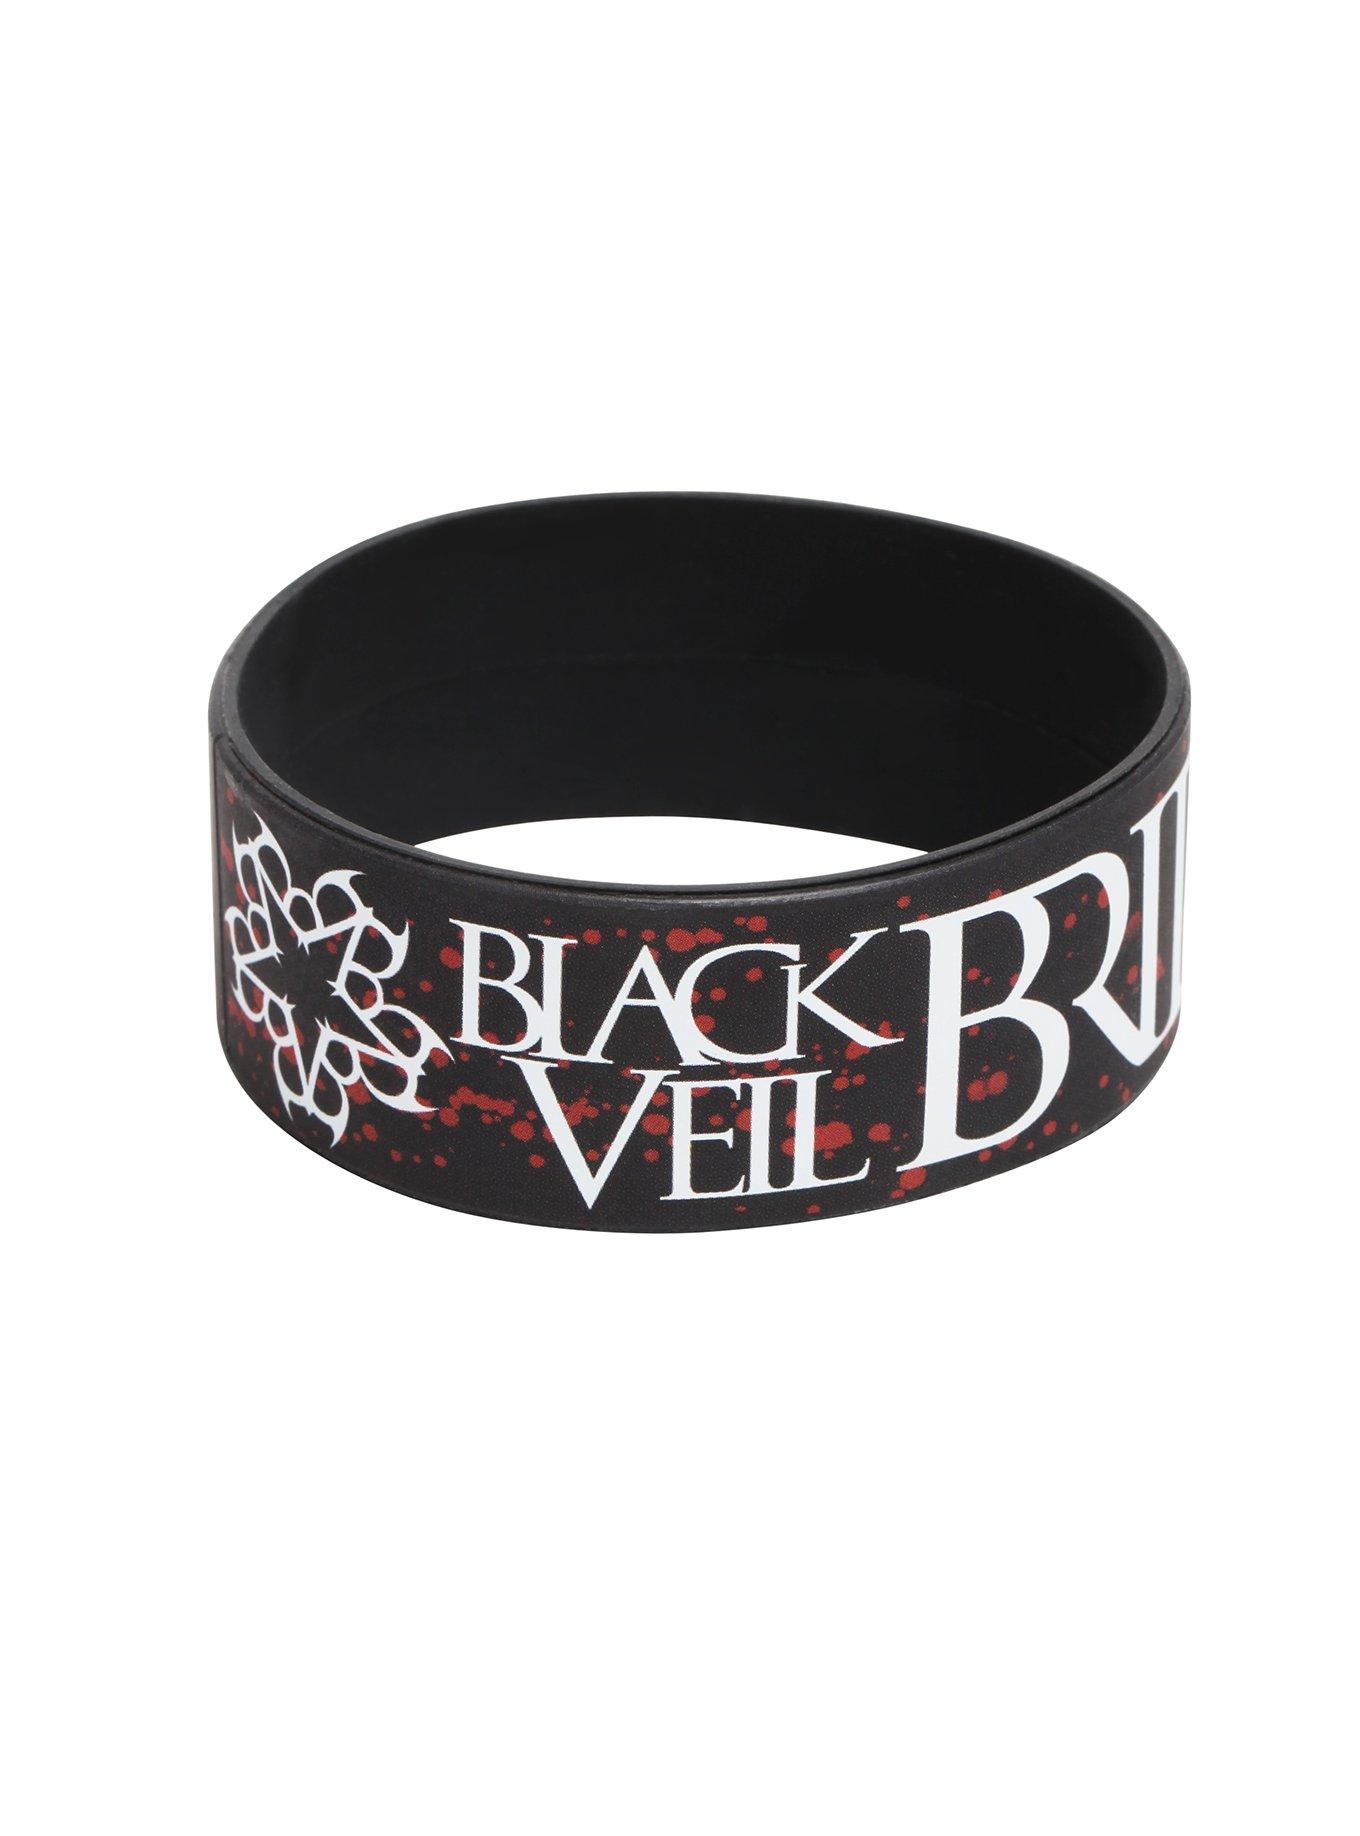 Black Veil Brides Splatter Band Rubber Bracelet, , hi-res